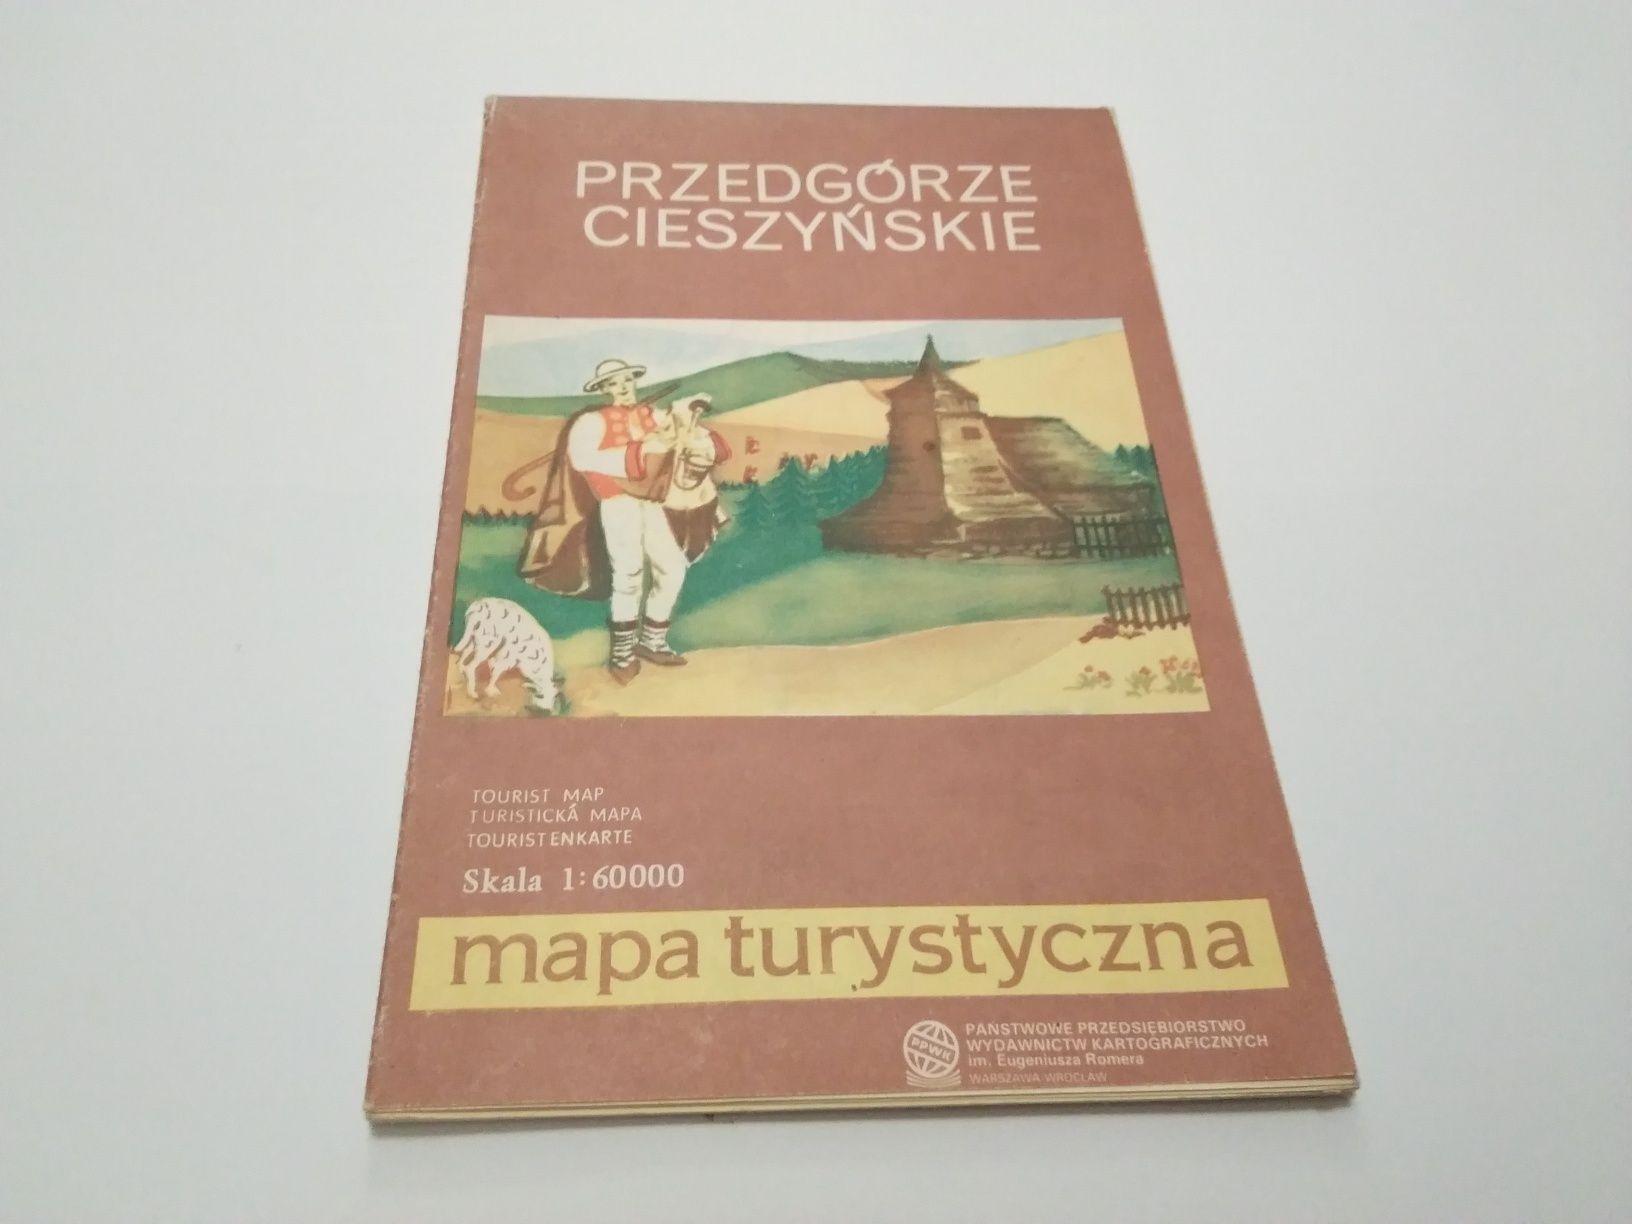 Mapa turystyczna Przedgórze Cieszyńskie